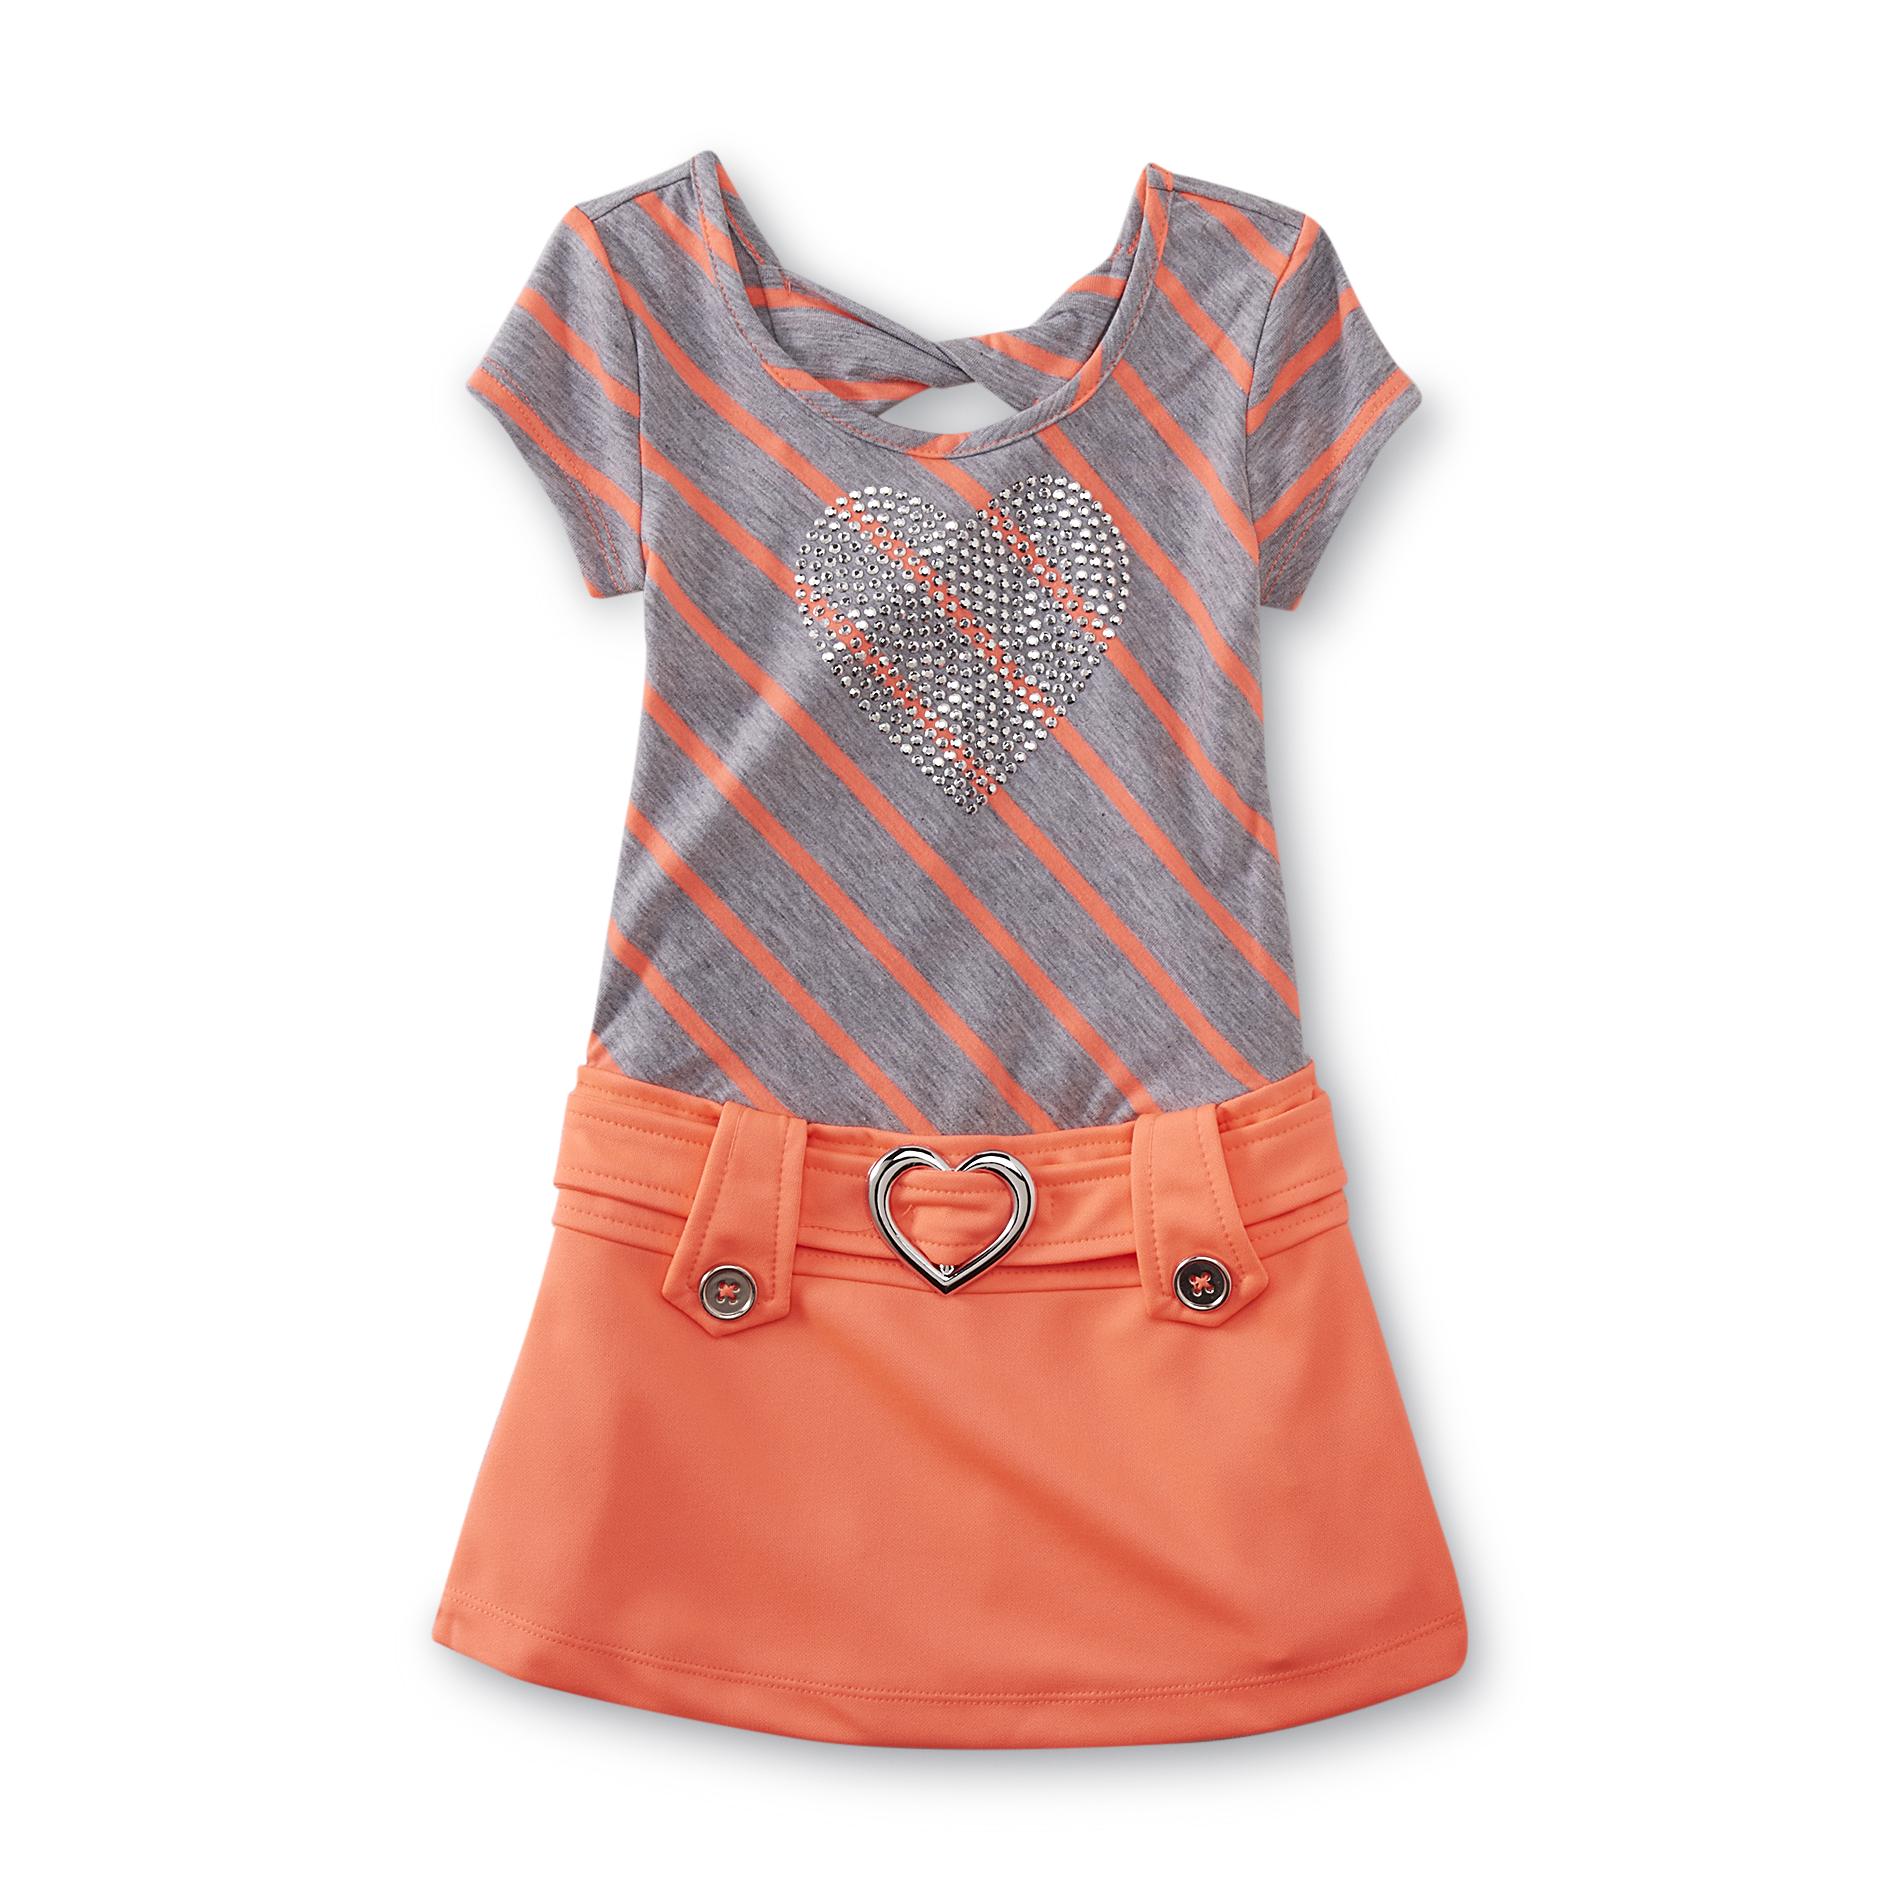 WonderKids Toddler Girl's Drop-Waist Dress - Striped & Heart